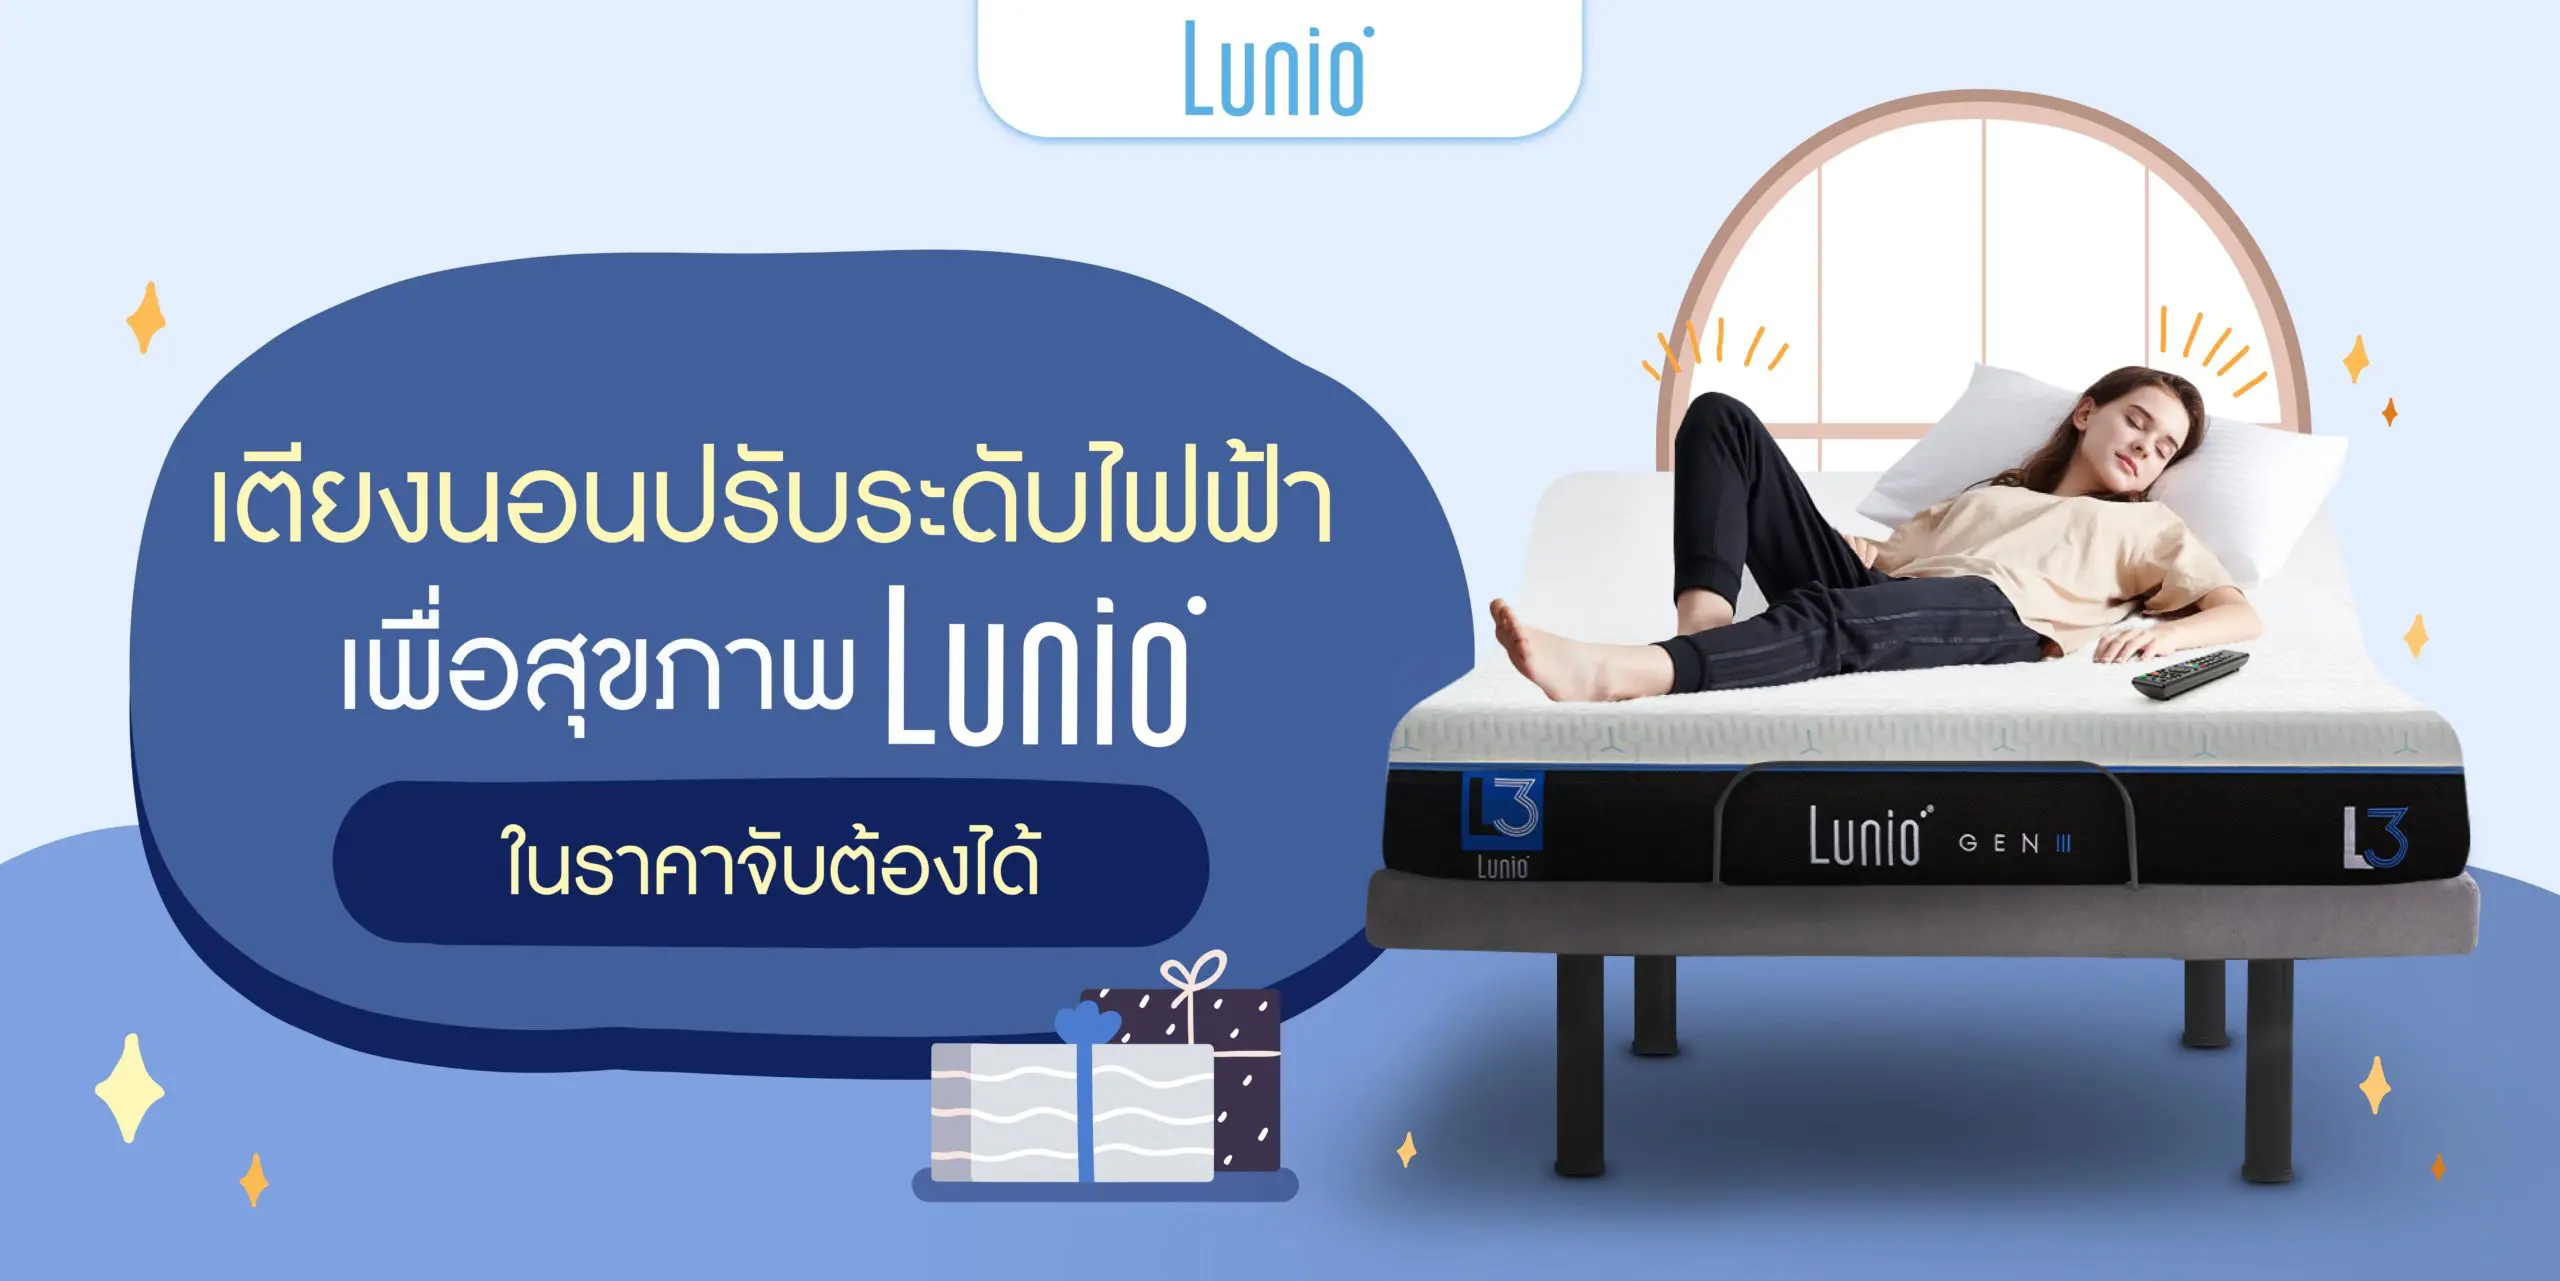 เตียงนอนปรับระดับไฟฟ้าเพื่อสุขภาพ Lunio ในราคาจับต้องได้